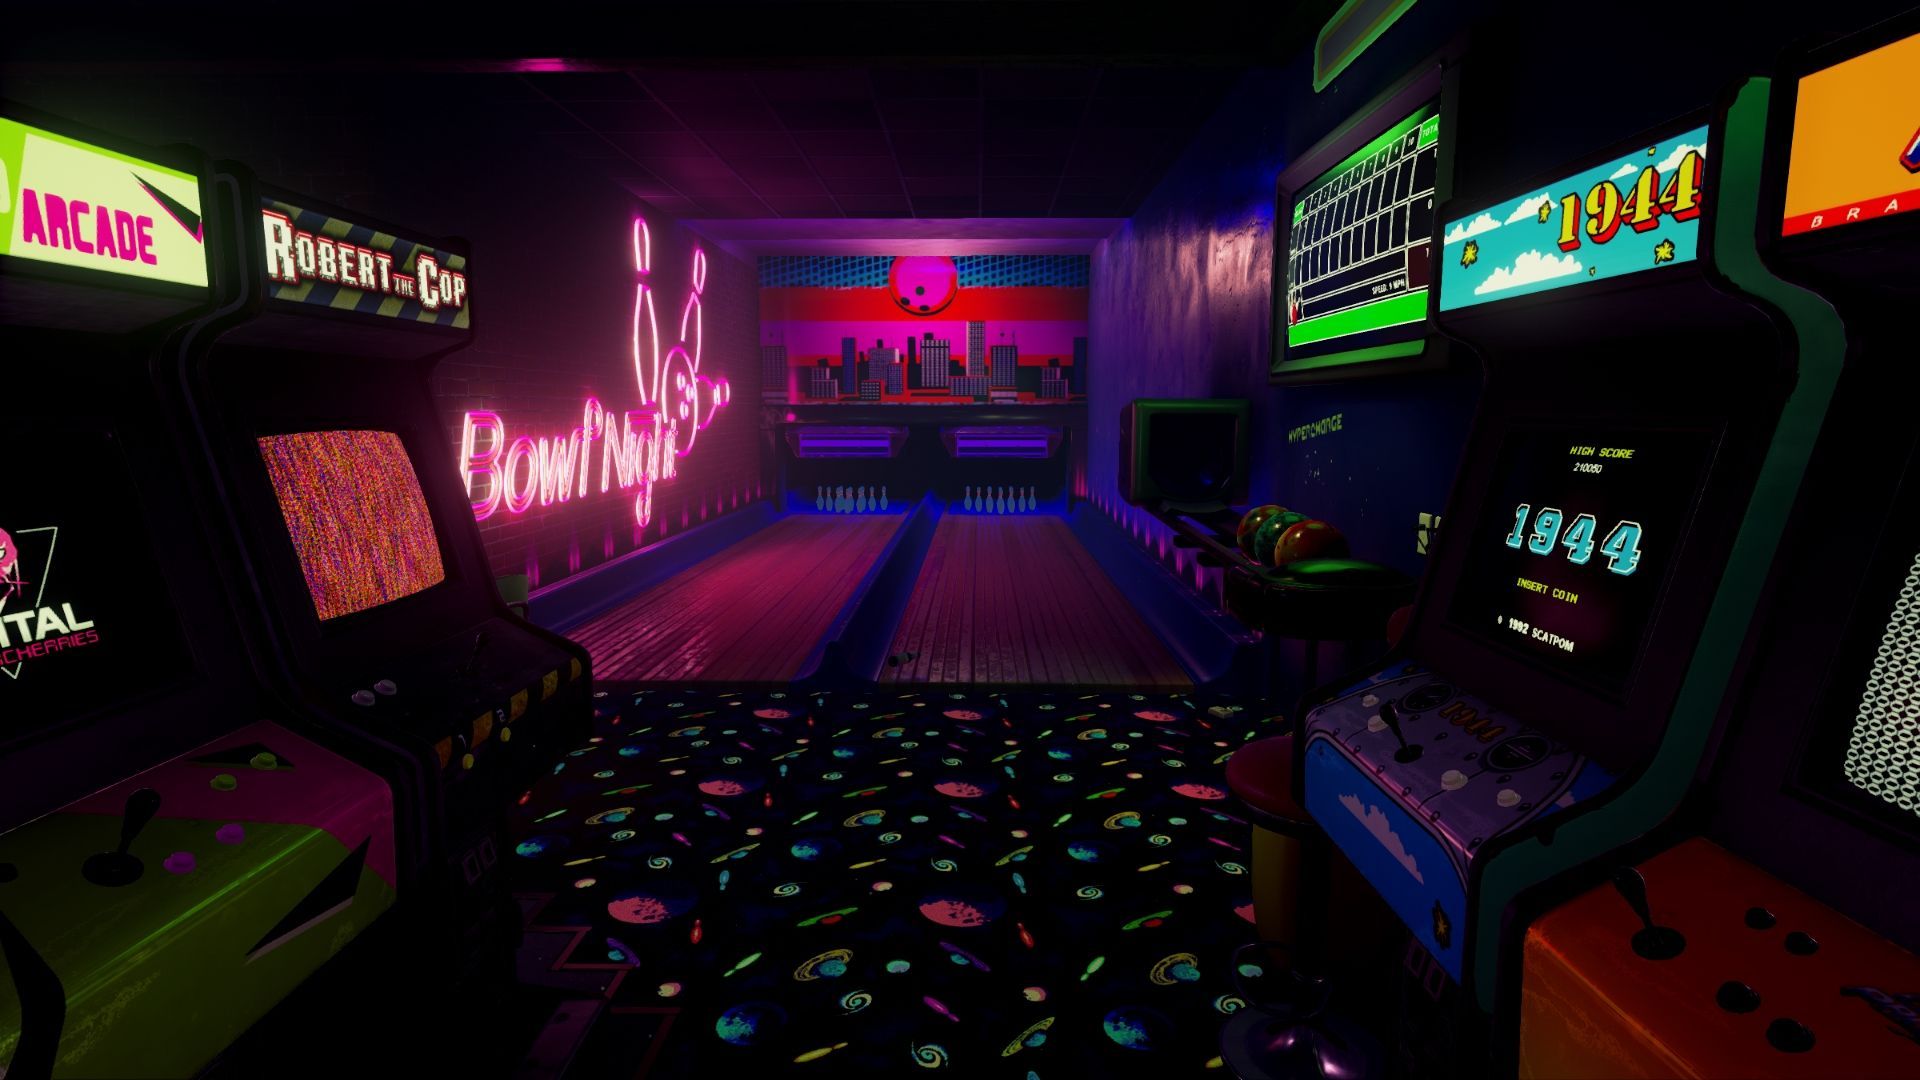 New Retro Arcade Neon 5. Room wallpaper designs, Room wallpaper, Arcade